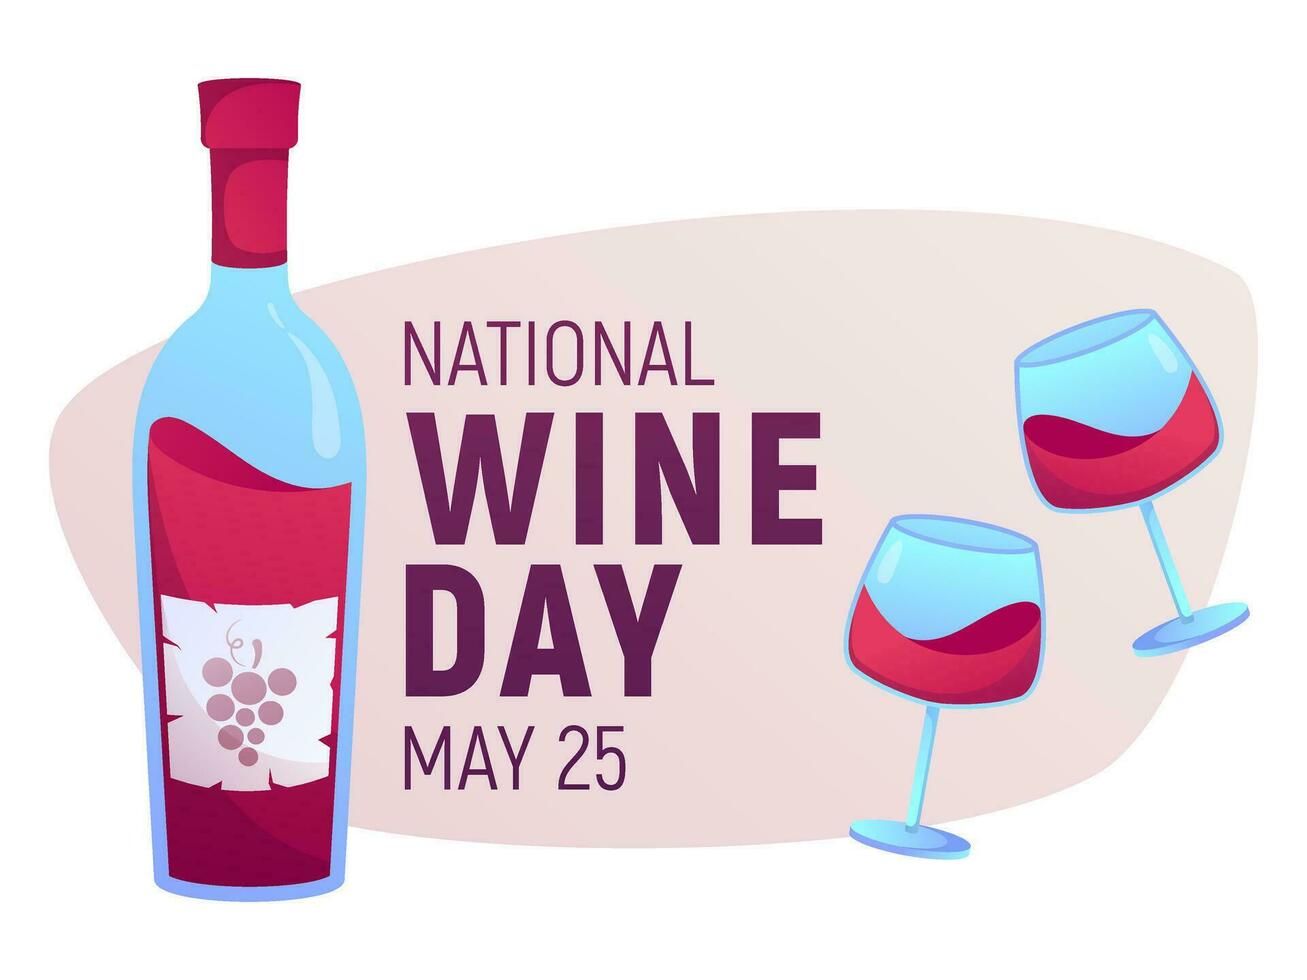 nacional vinho dia pode 25º. vetor ilustração. feriado poster